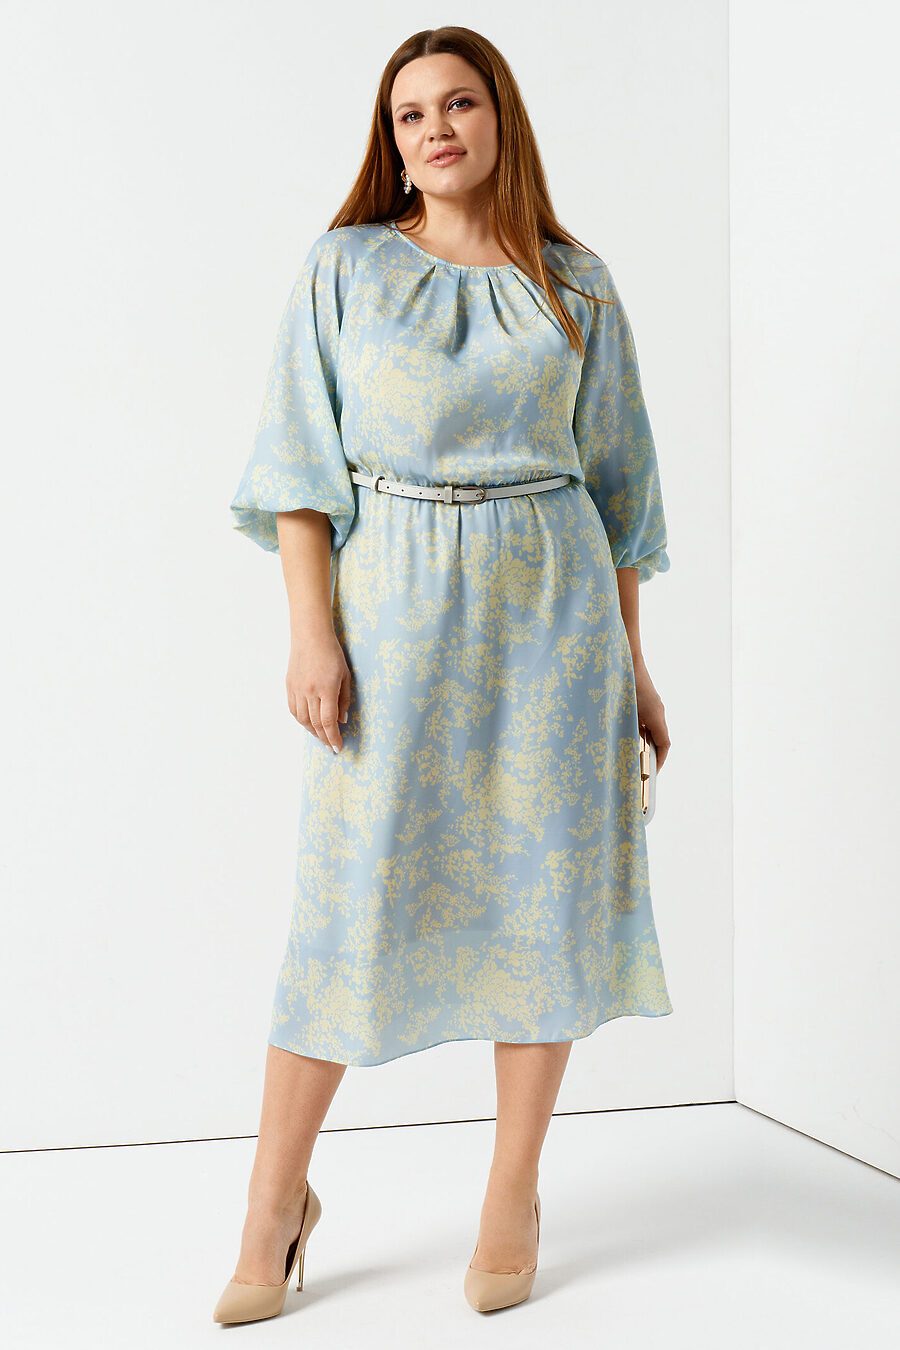 Платье для женщин PANDA 796261 купить оптом от производителя. Совместная покупка женской одежды в OptMoyo